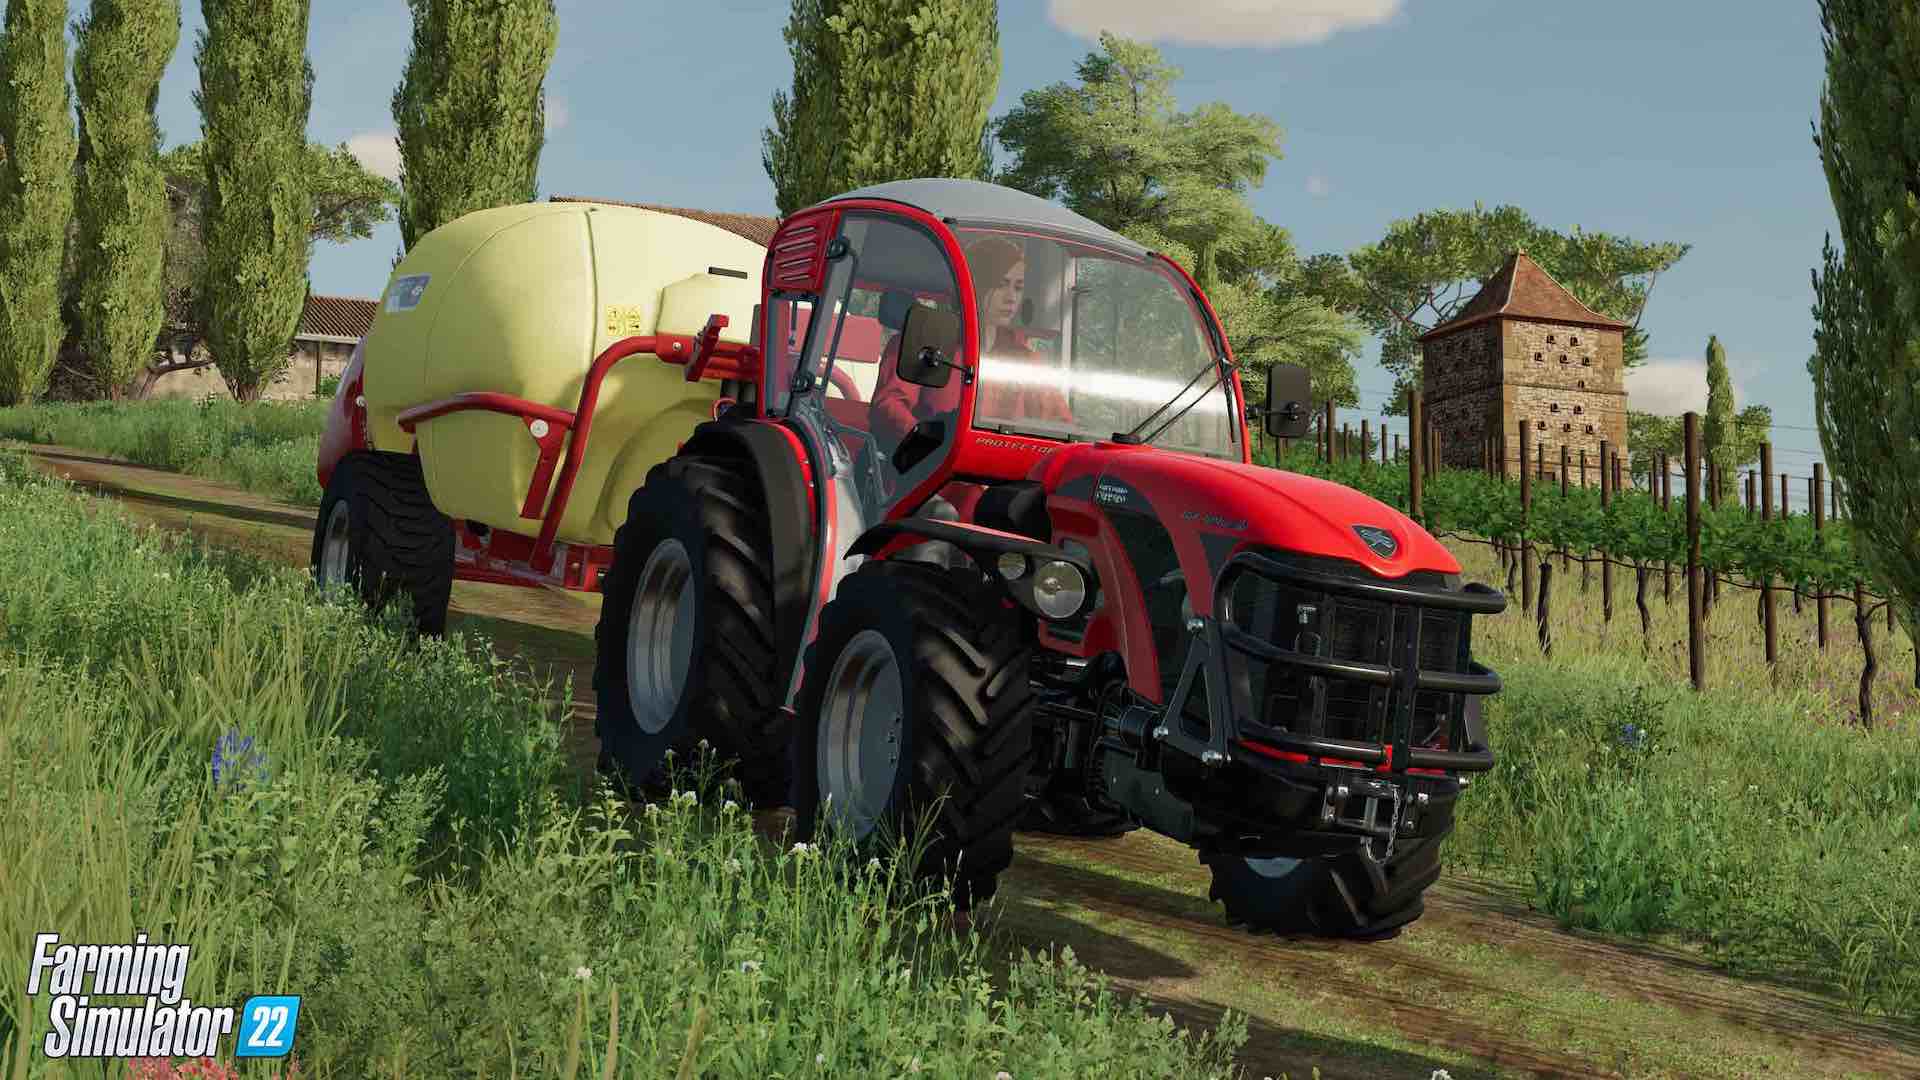 Farming Simulator 22 cosecha su próximo DLC, que podremos recoger en marzo - AllGamersIn